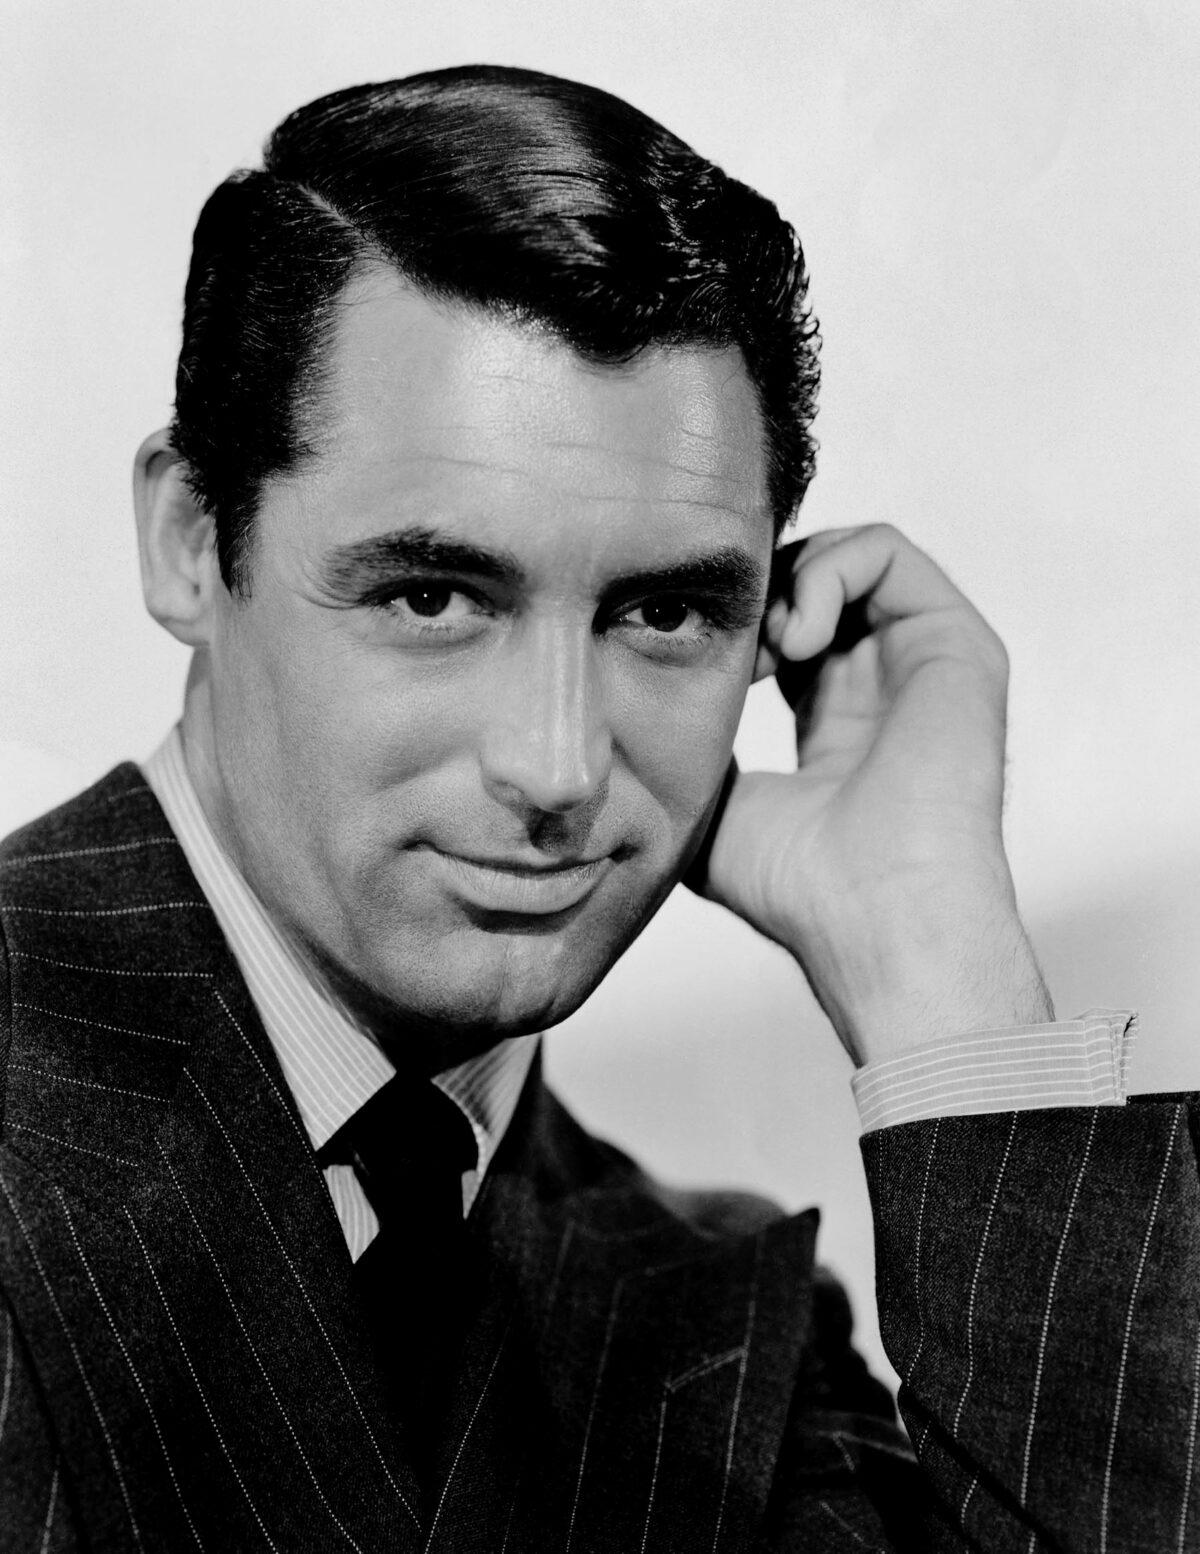 Publicity still of Cary Grant from “Suspicion,” 1941. (Public Domain)